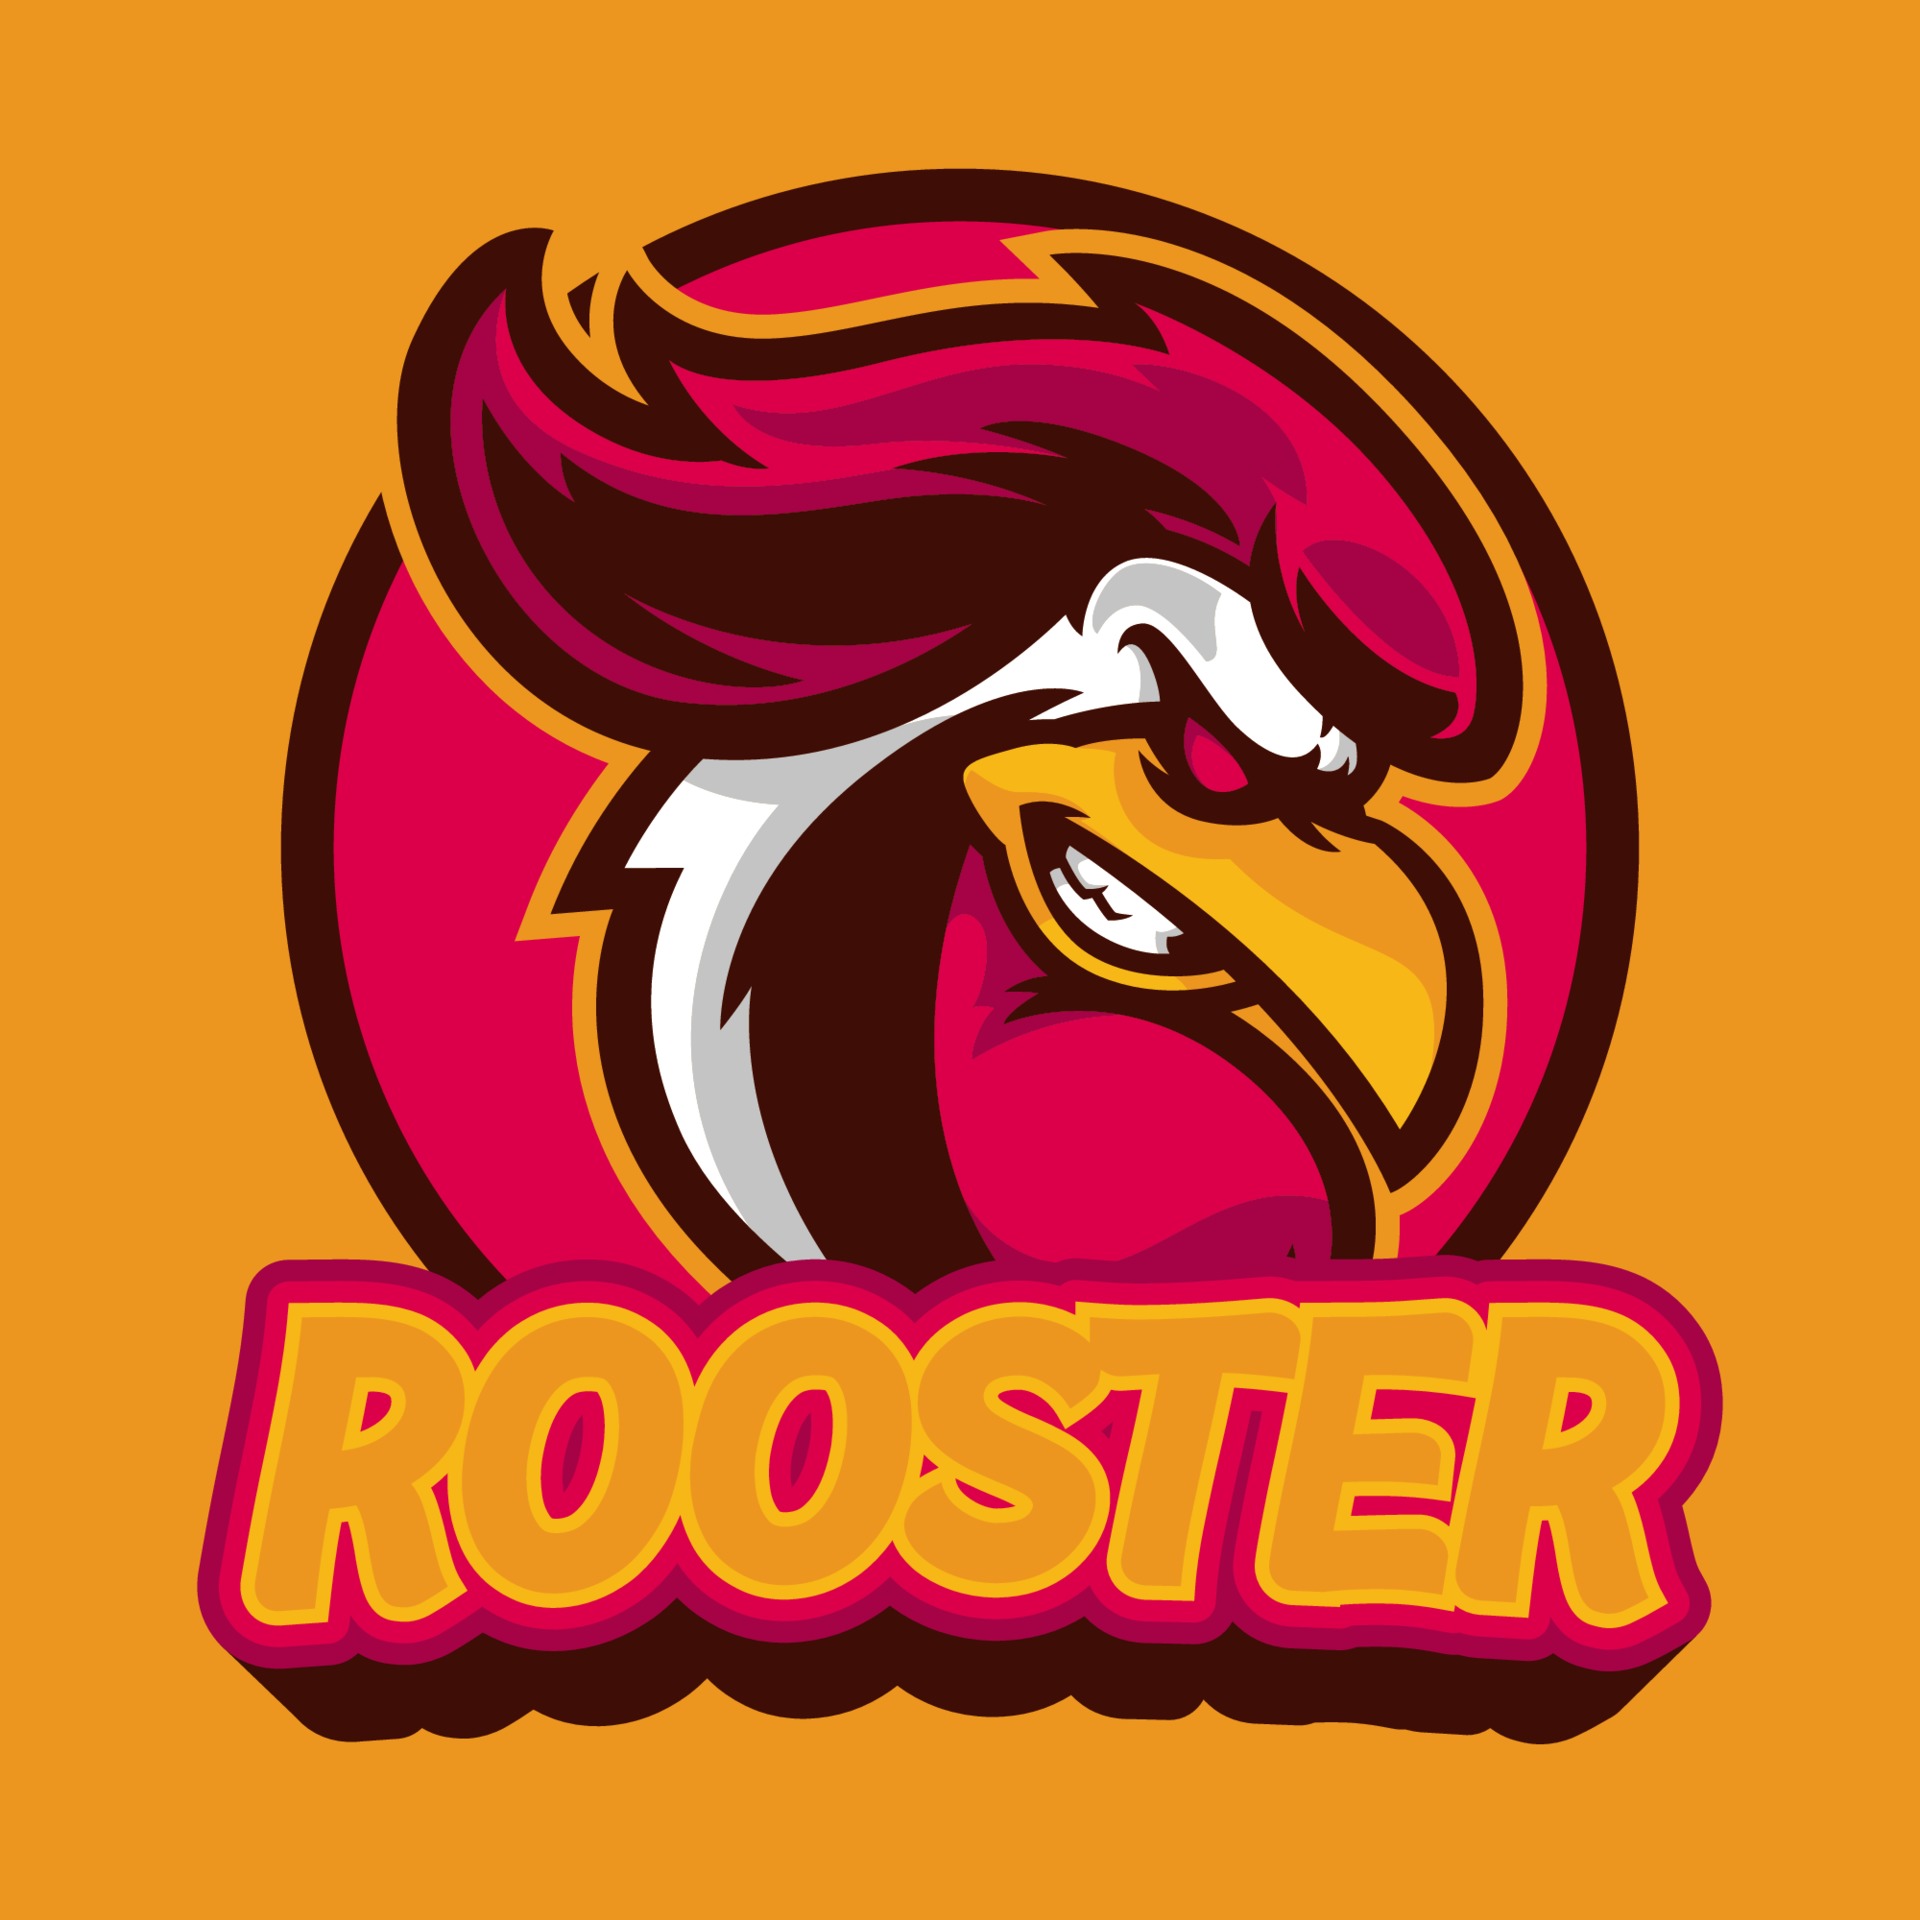 Mascote de jogos de design de equipe de esport frango galo